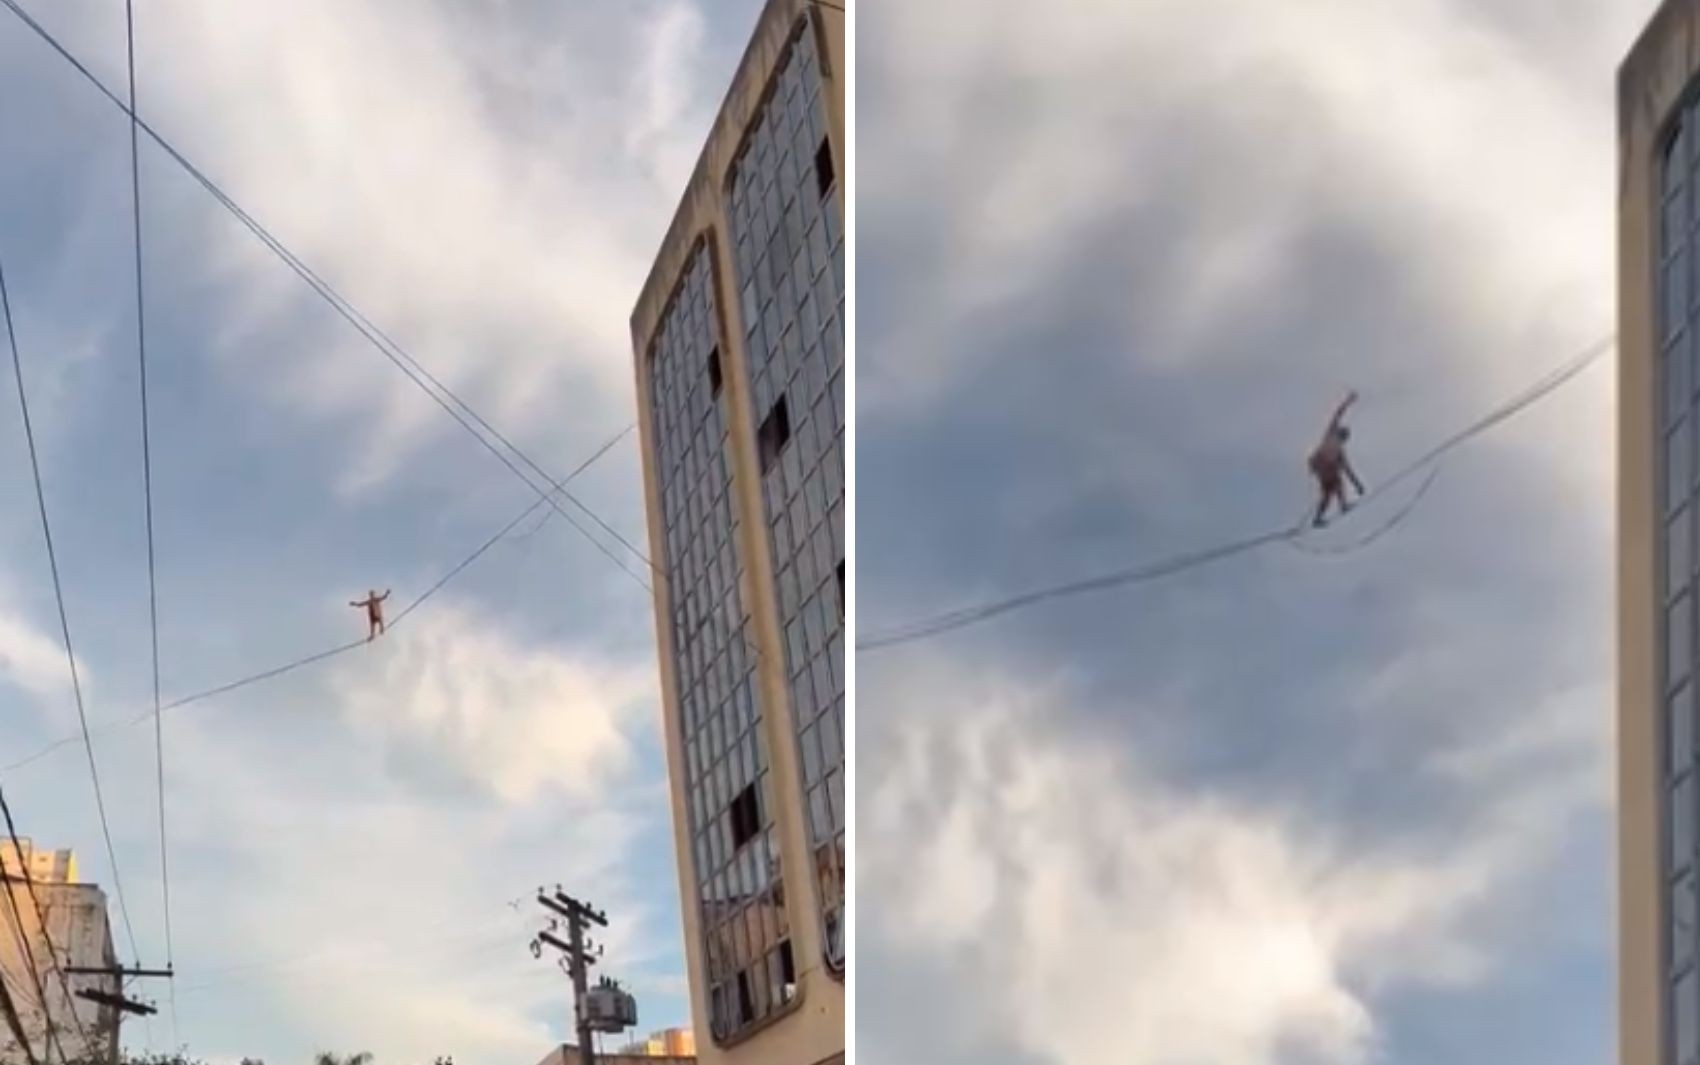 Equilibrista se arrisca ao andar em corda entre prédios em Goiânia; vídeo